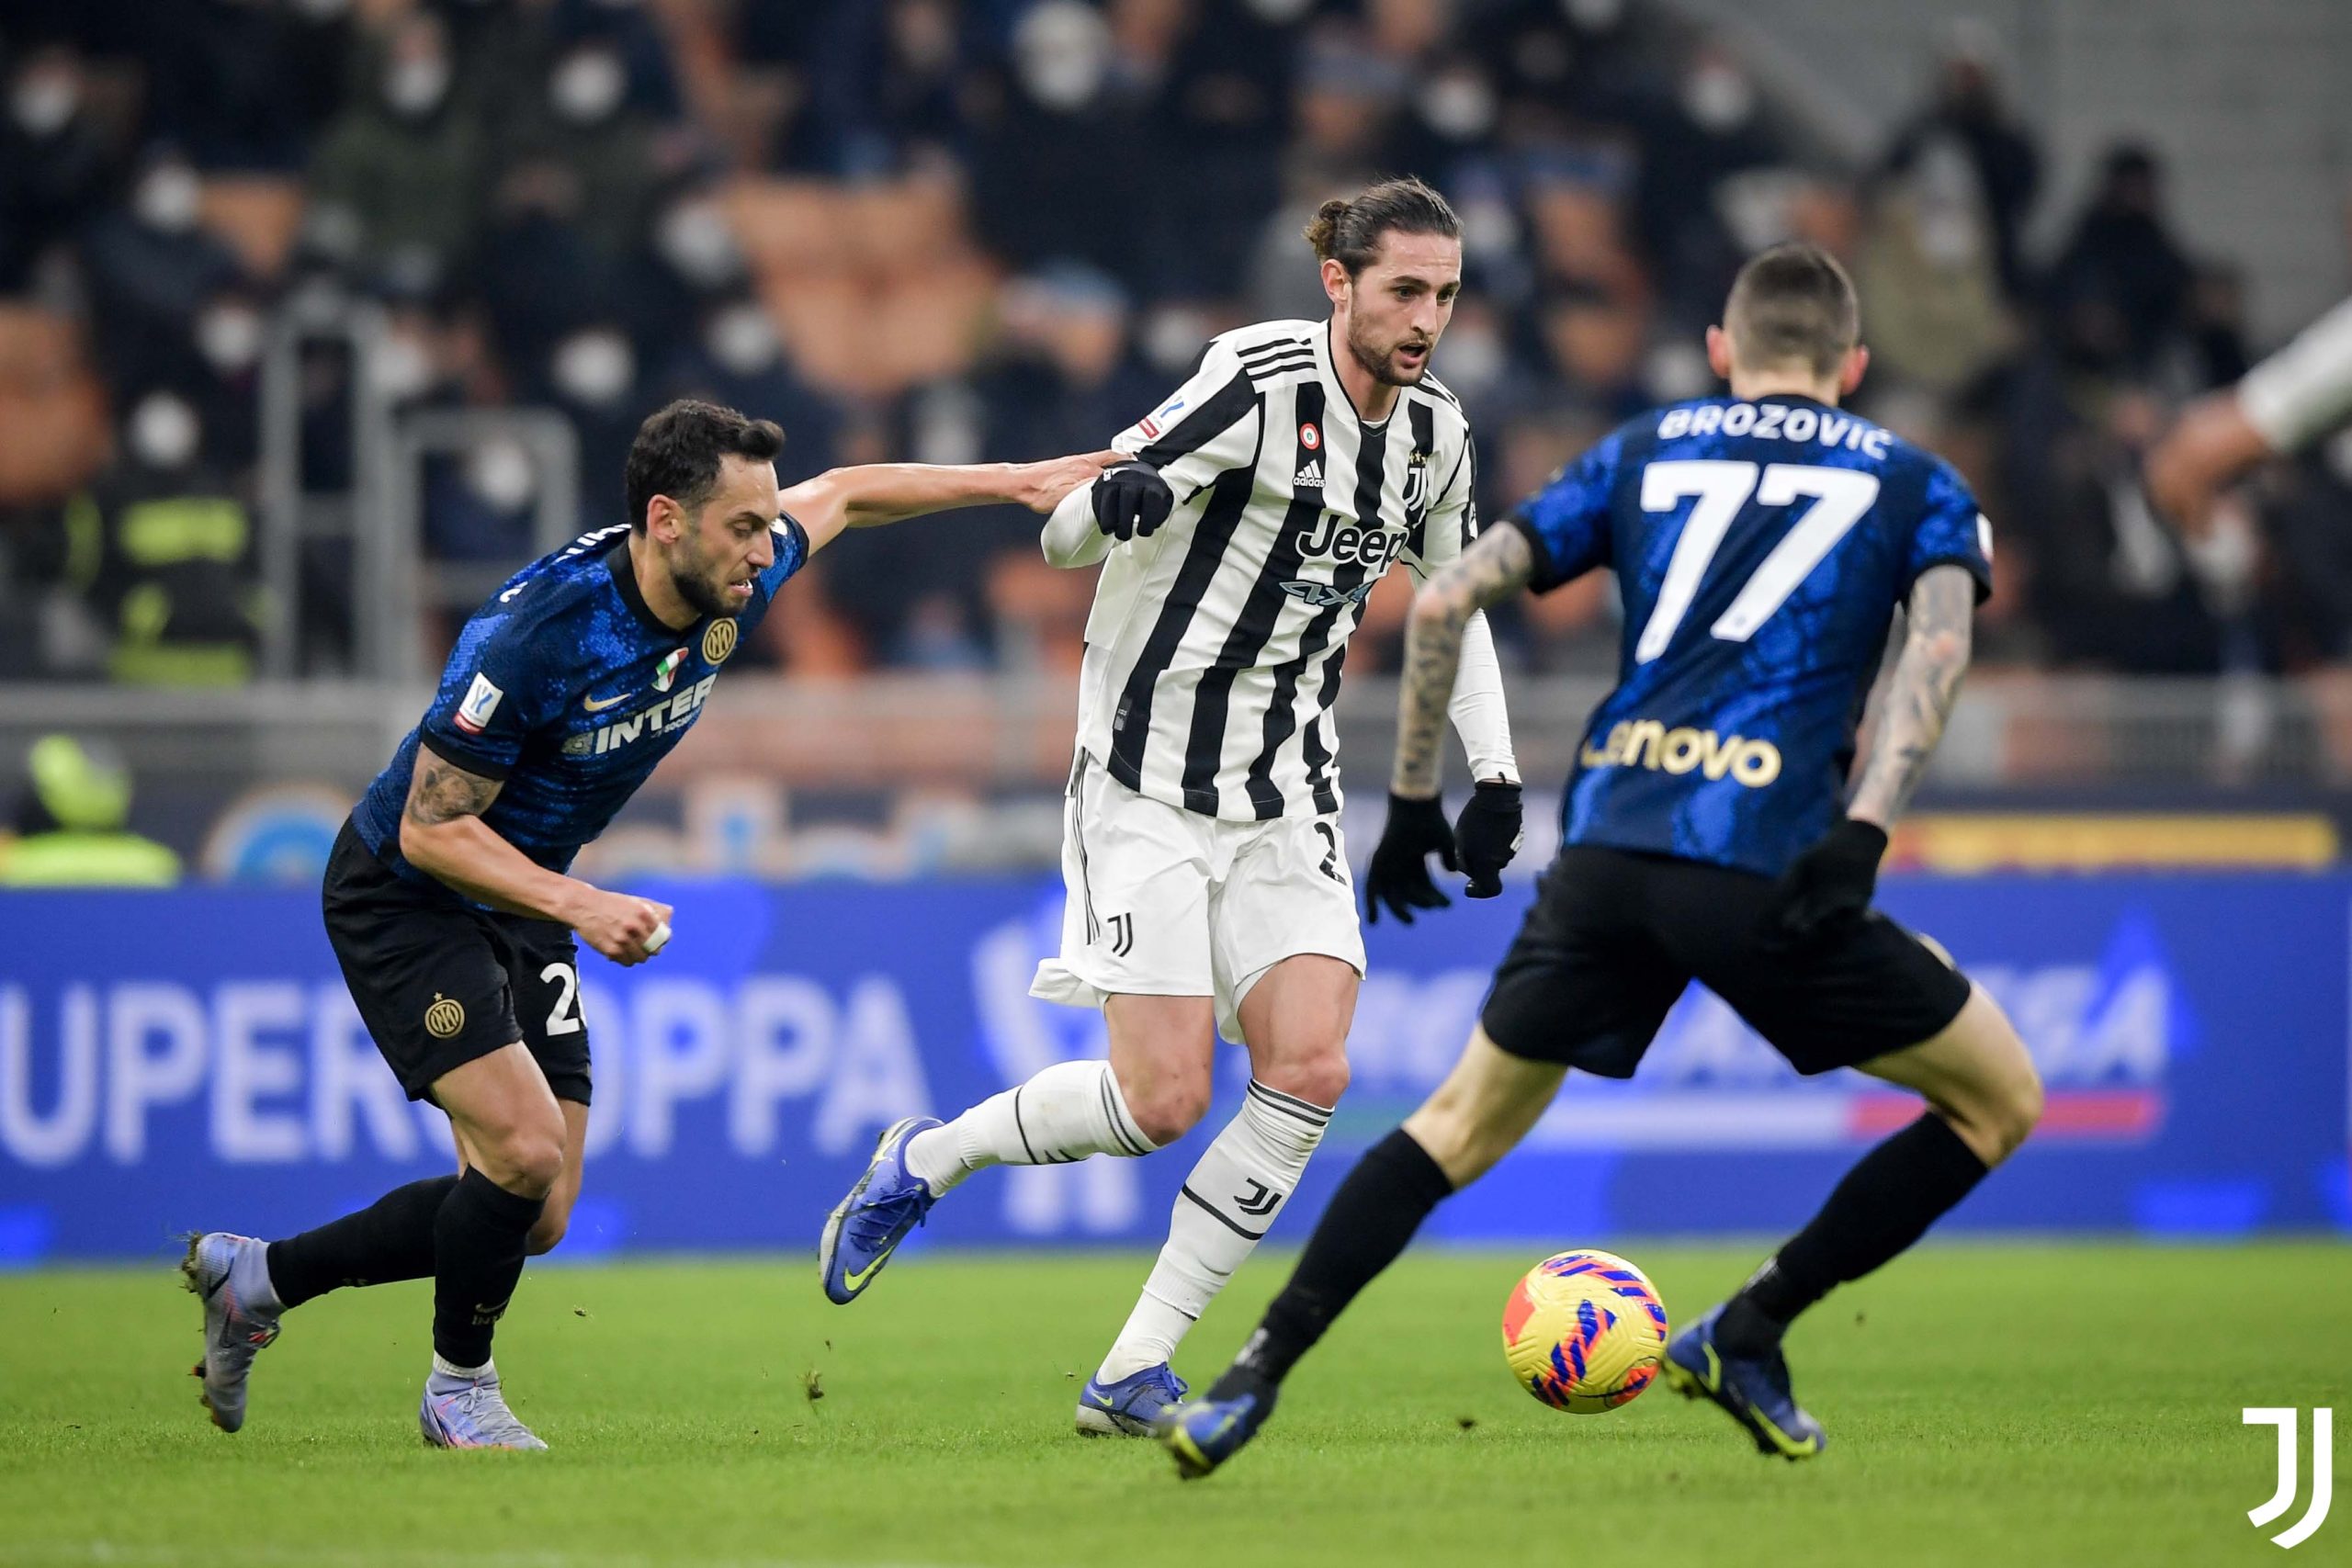 Pemain Juventus dikepung dua pemain Inter Milan dalam laga semala. (@juventusfc/Twitter)